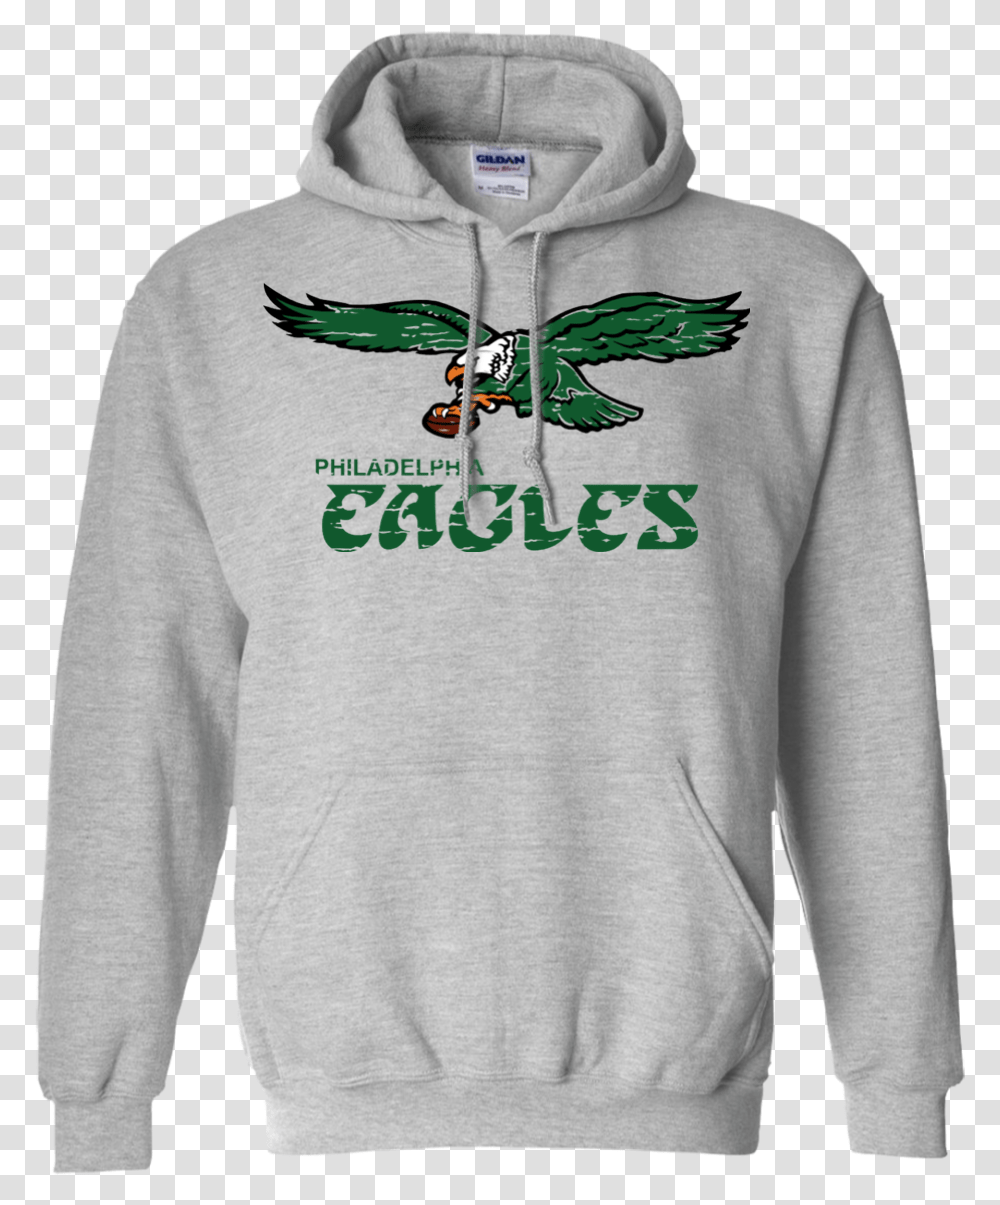 Retro Philadelphia Eagles Inspired Pullover Hoodie Utah Jazz Basketball Hoodie, Clothing, Apparel, Sweatshirt, Sweater Transparent Png